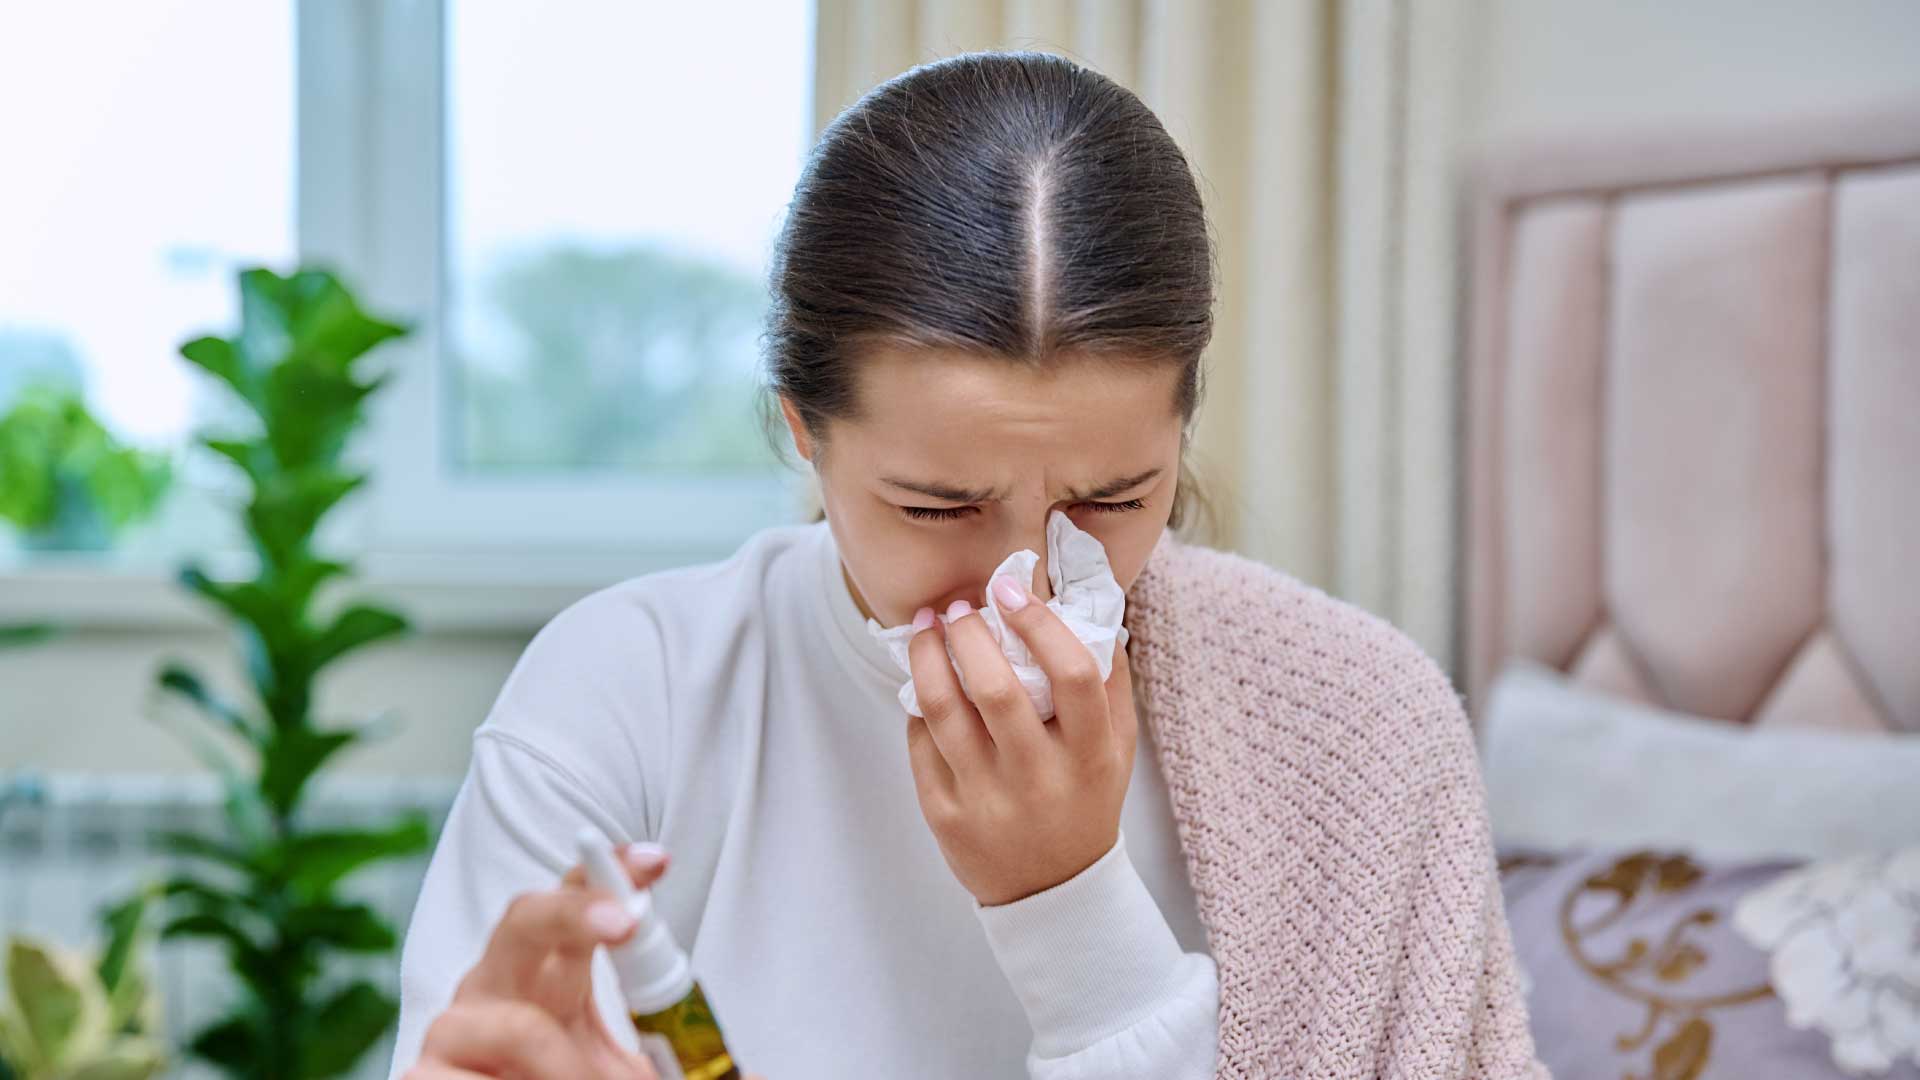 Principais tipos de alergias respiratórias